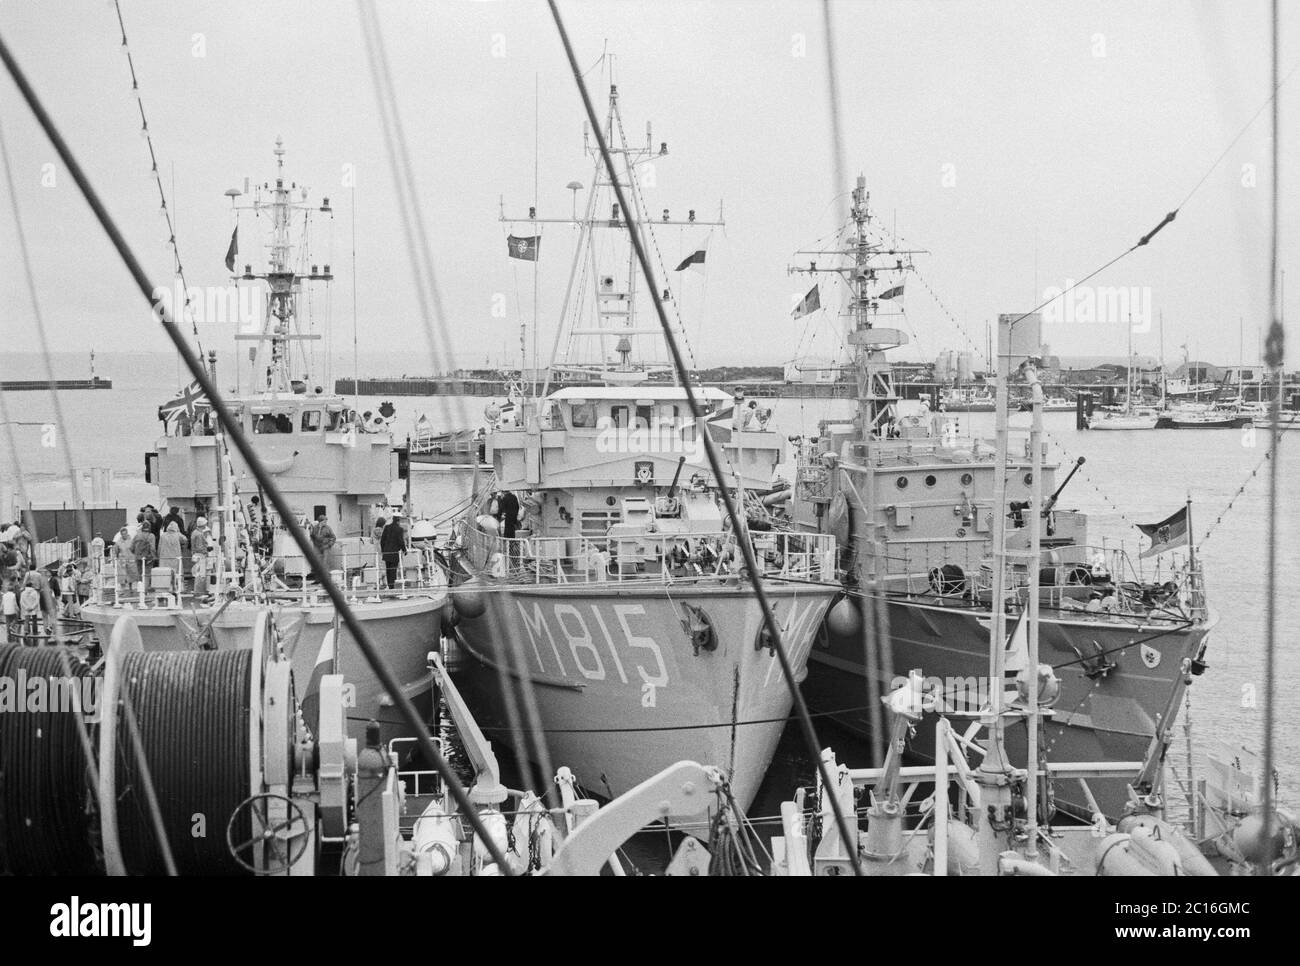 Bateaux visitant la base navale, île de Borkum, 22 août 1981, Basse-Saxe, Allemagne Banque D'Images